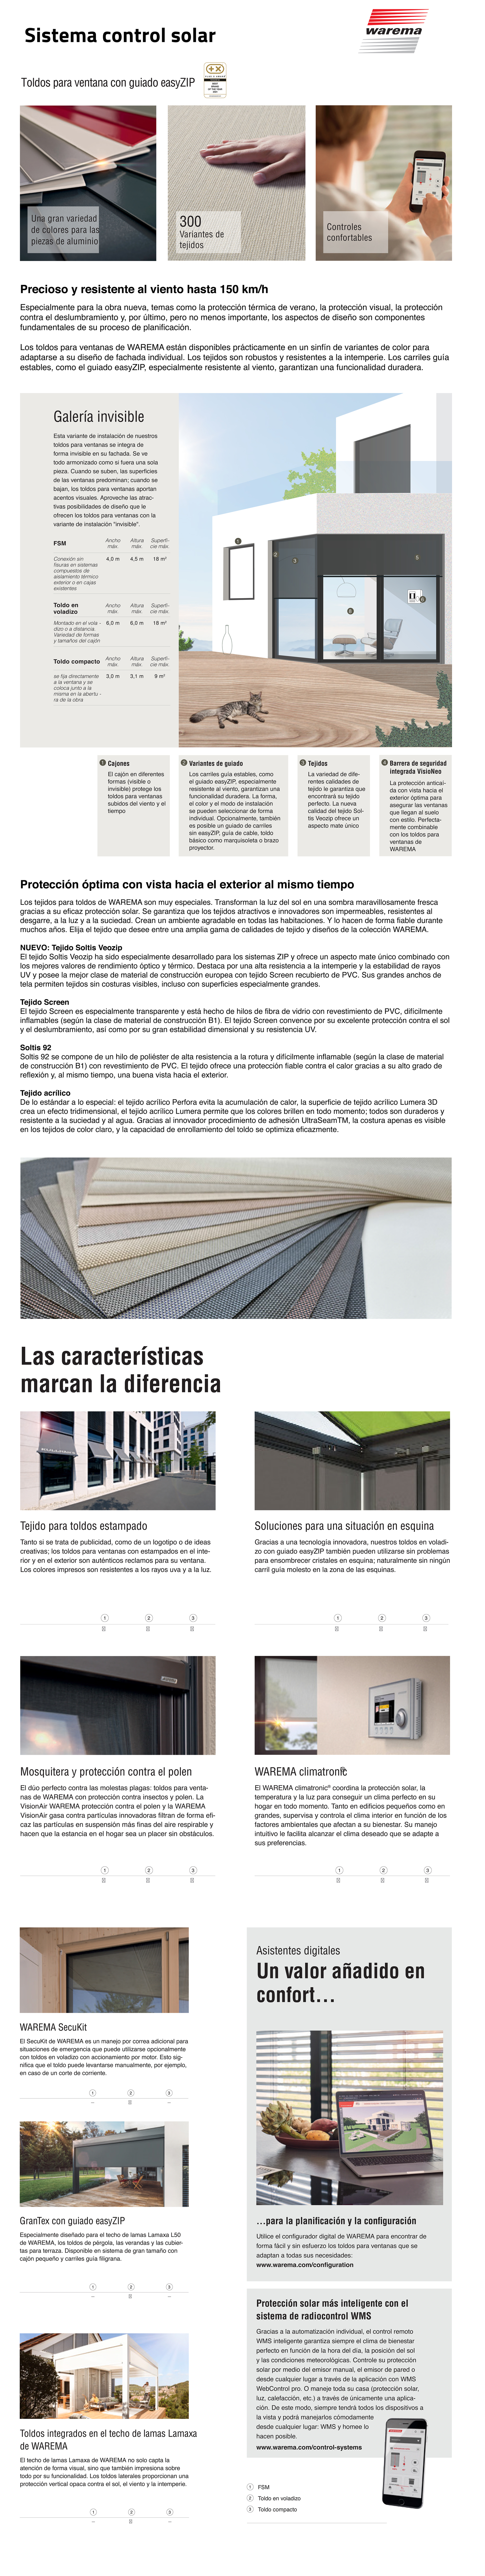 Grupo Valverde | Ventanas a la carta para profesionales, ventanas de aluminio